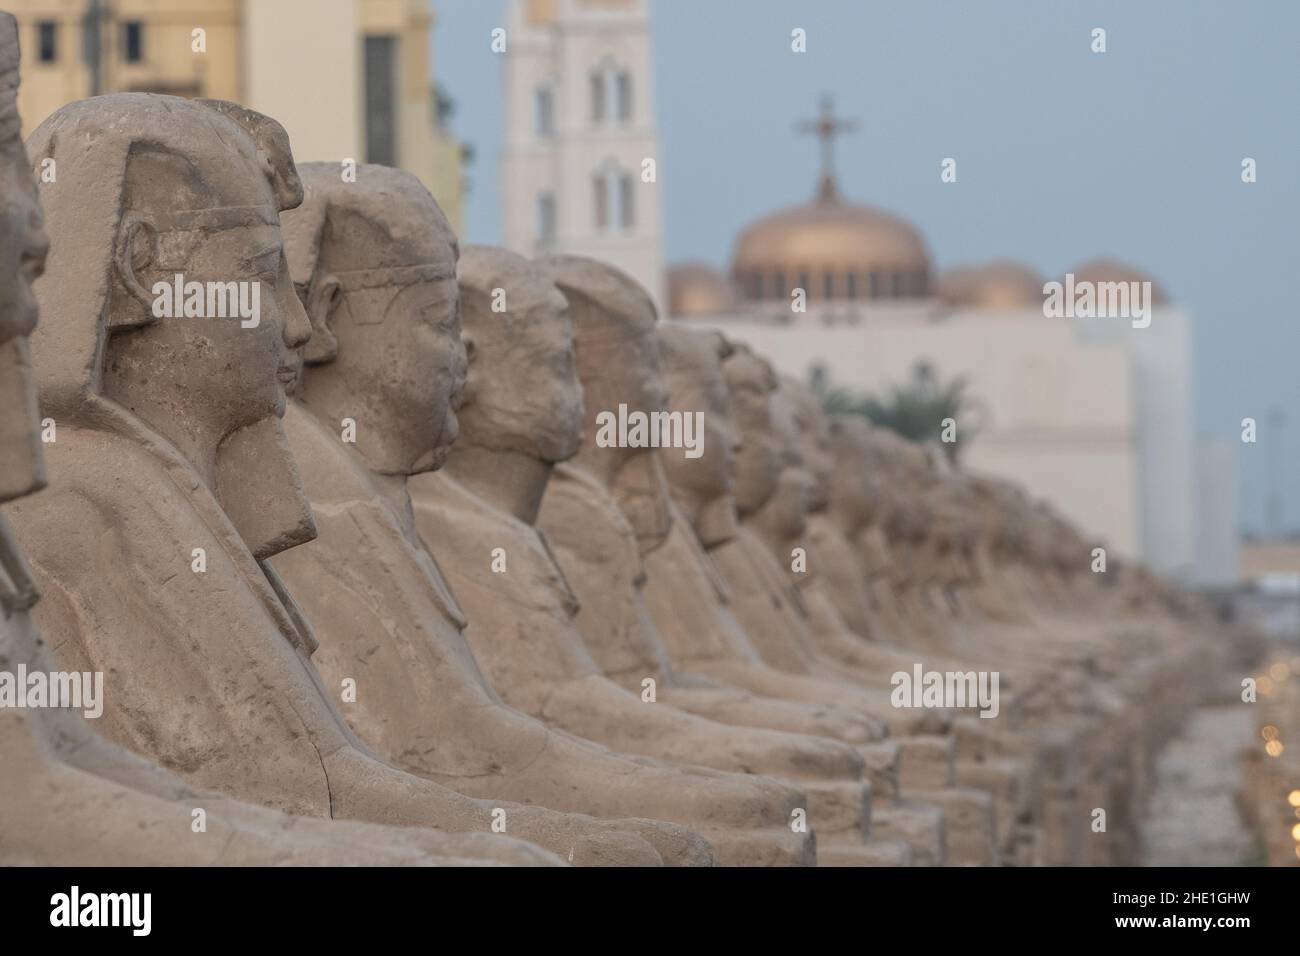 Le antiche statue sfinge che costeggiano il viale delle sfingi a Luxor, Egitto la strada storica è fiancheggiata da 100s monumenti di pietra. Foto Stock